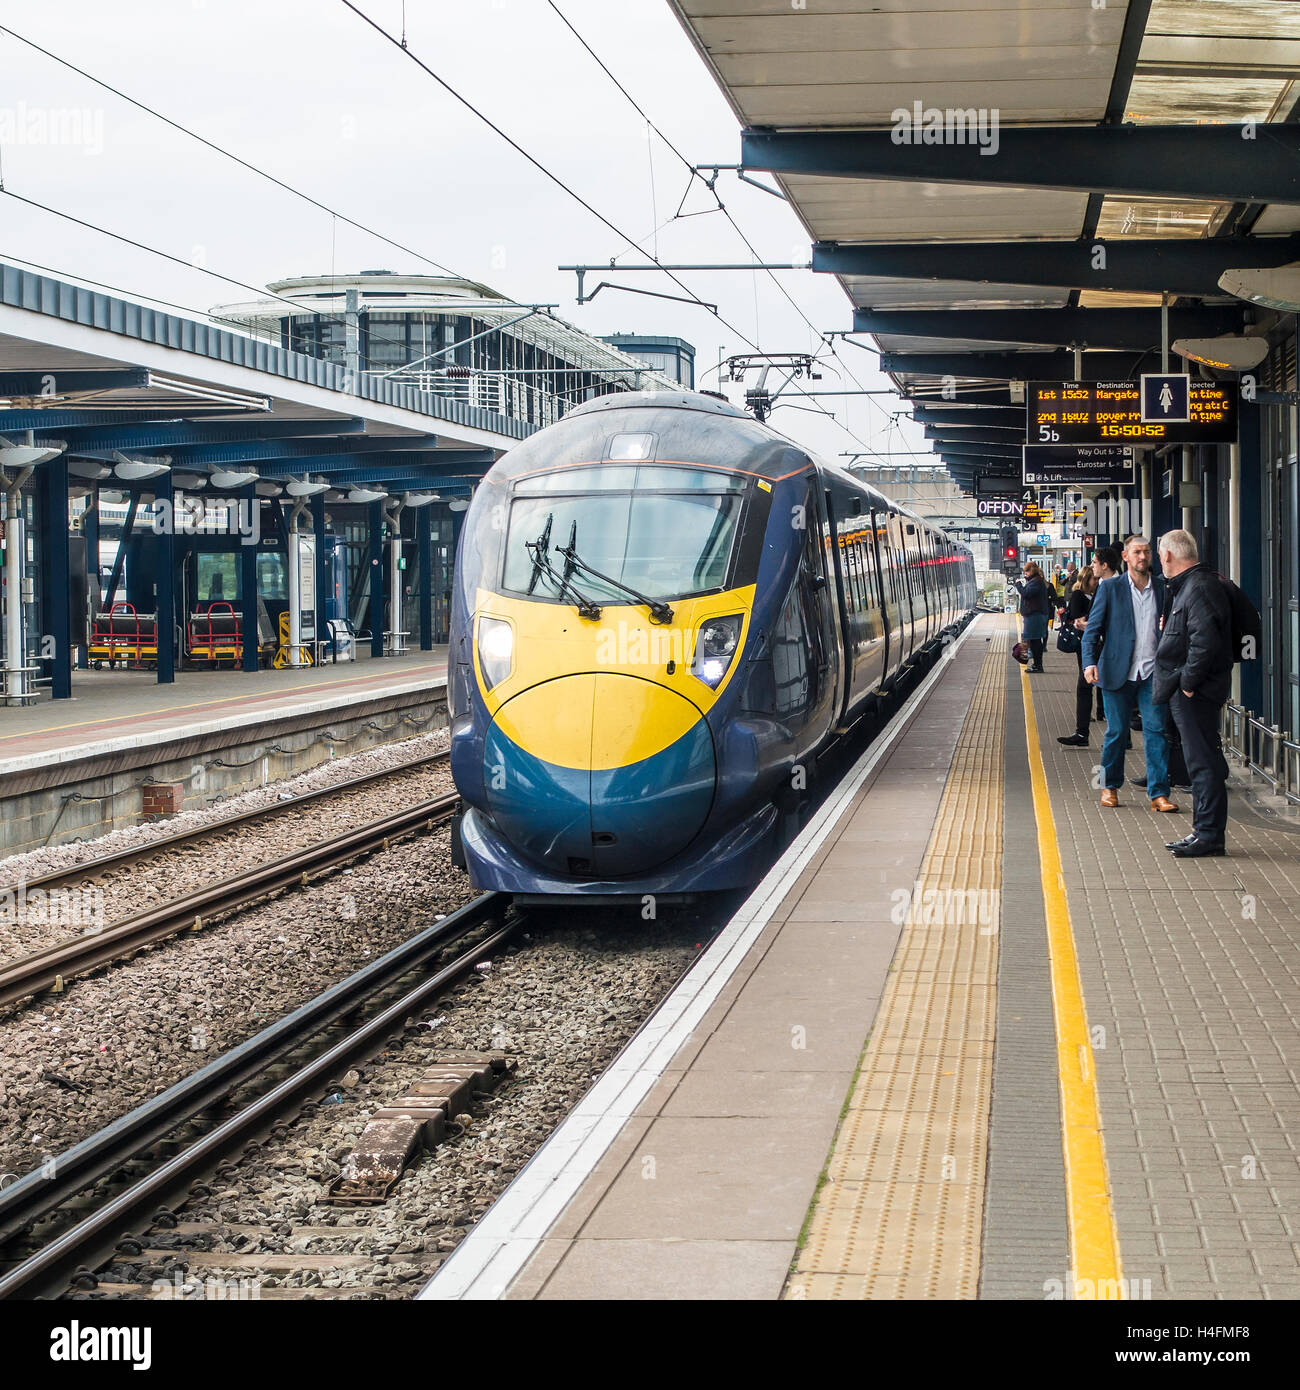 Javelin tren de alta velocidad que llegan a la estación internacional de Ashford, Kent, Inglaterra Foto de stock